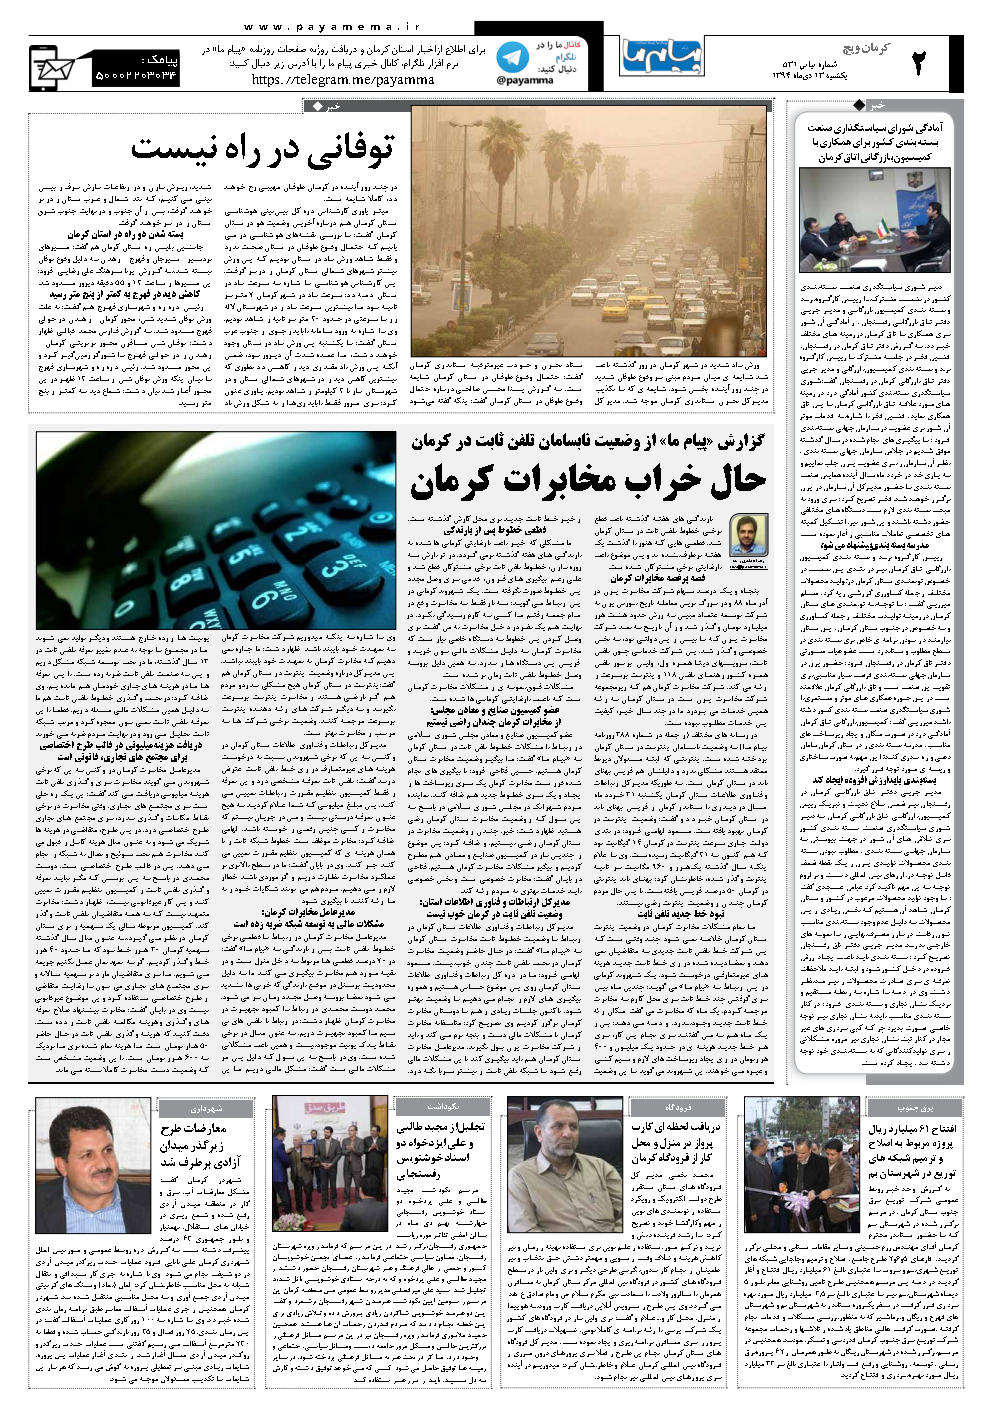 صفحه کرمان ویچ شماره 531 روزنامه پیام ما